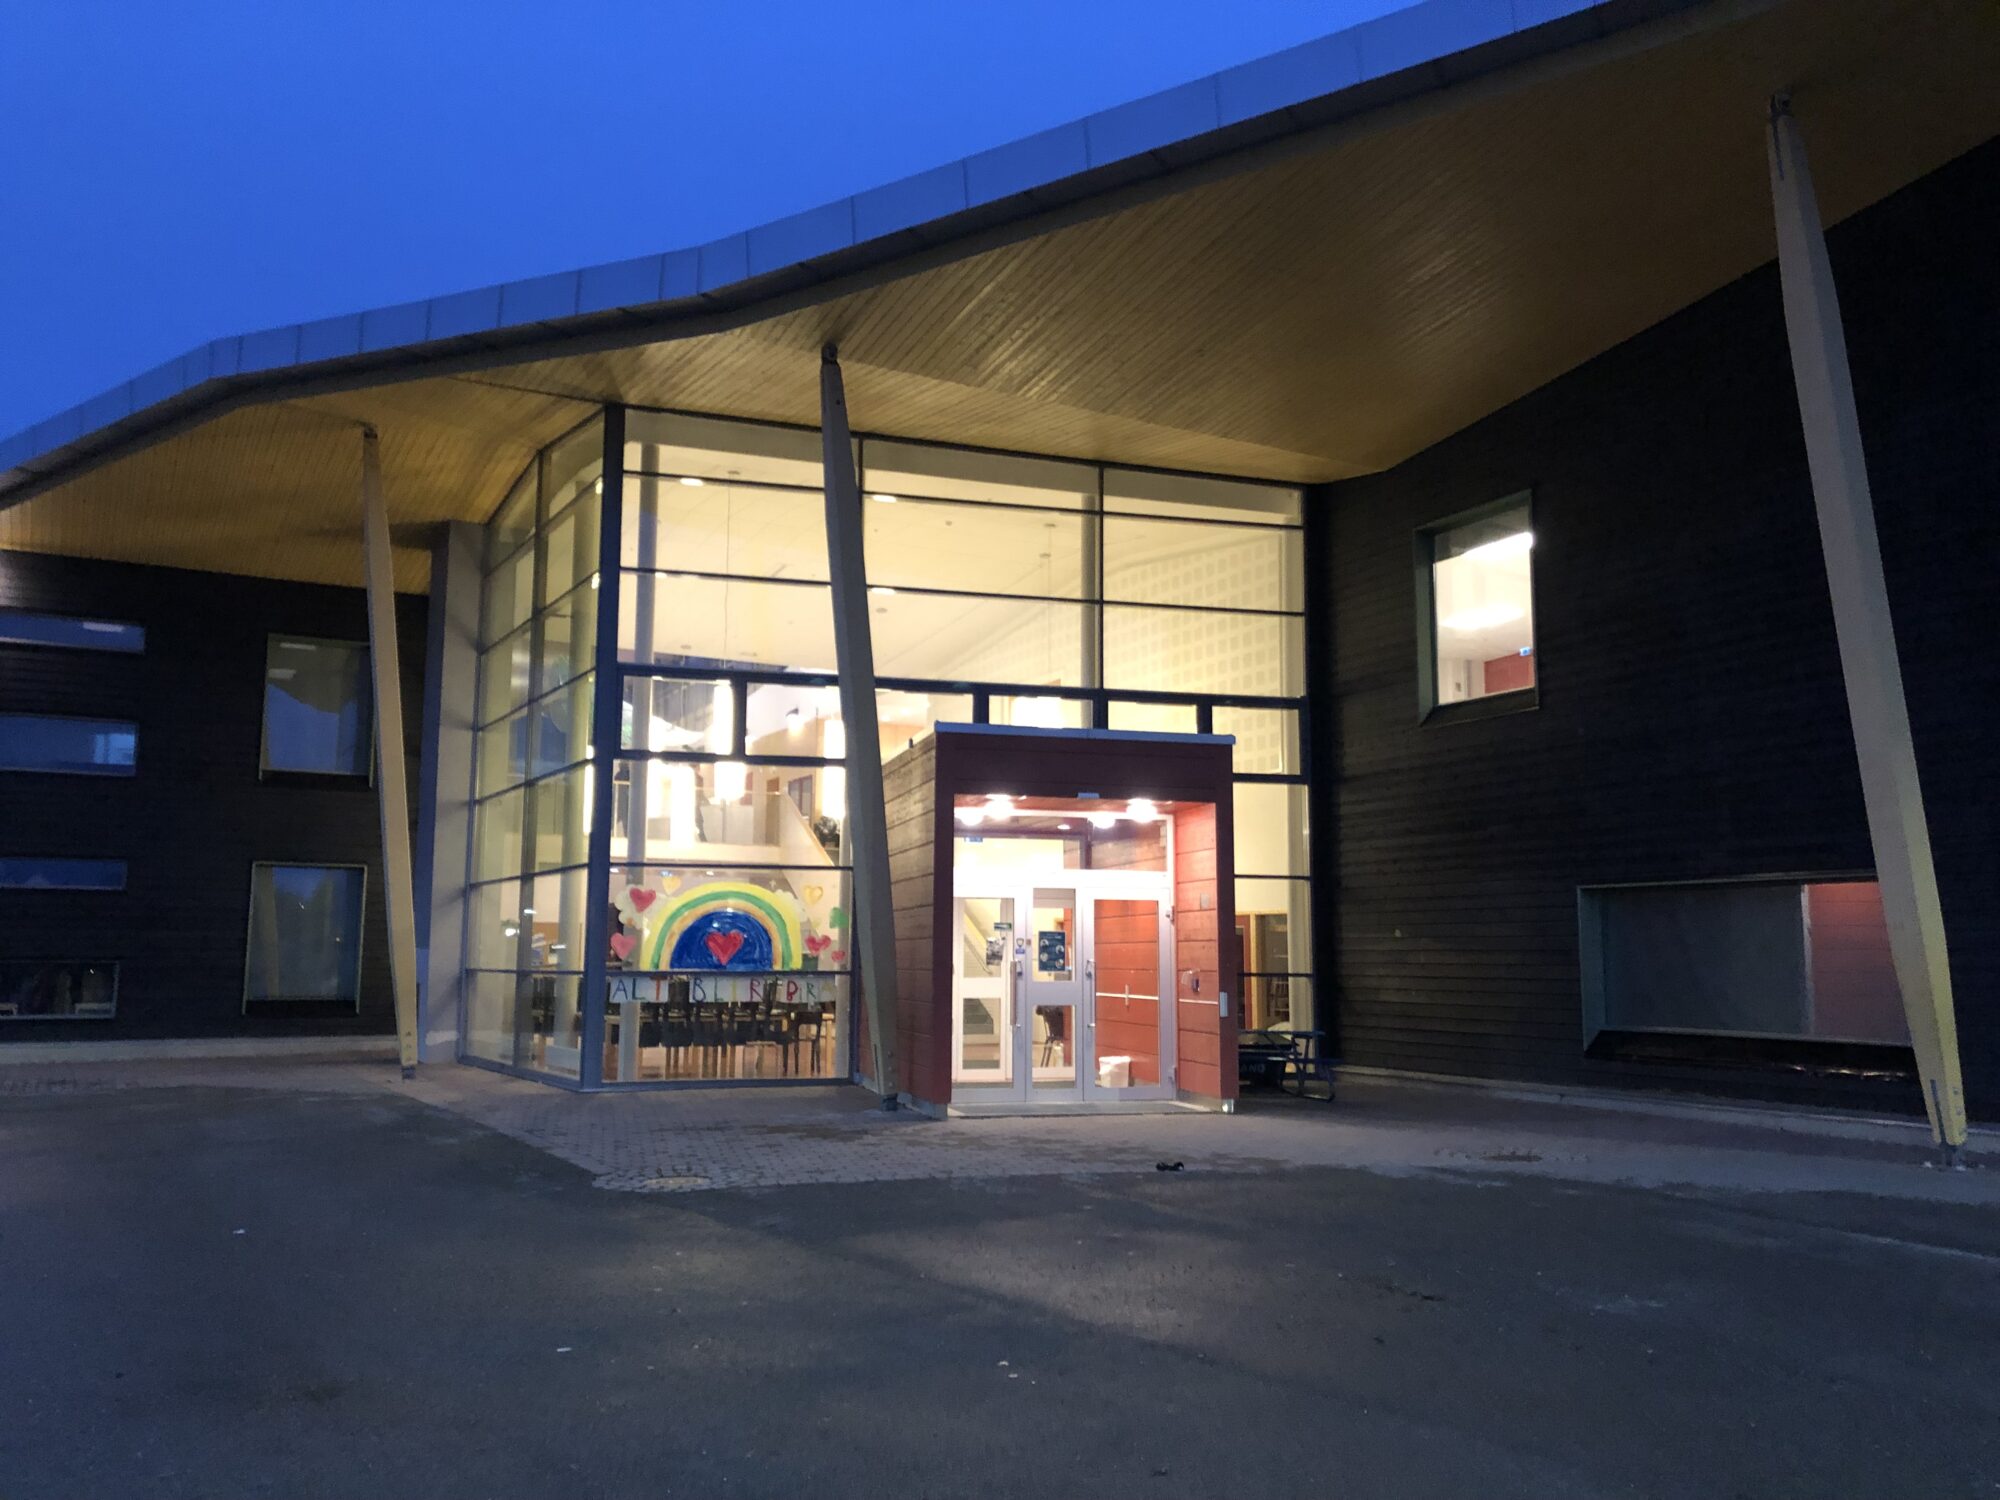 Lave lysnivåer i høst og vintermånedene, som her ved Fagereng skole i Tromsø, reduserer eksponering for naturlig blått lys og gjør bruk av kunstig lys nødvendig. Arkitekter: Arkitektlaget og HMXW arkitekter. Foto: Solvår Wågø/SINTEF